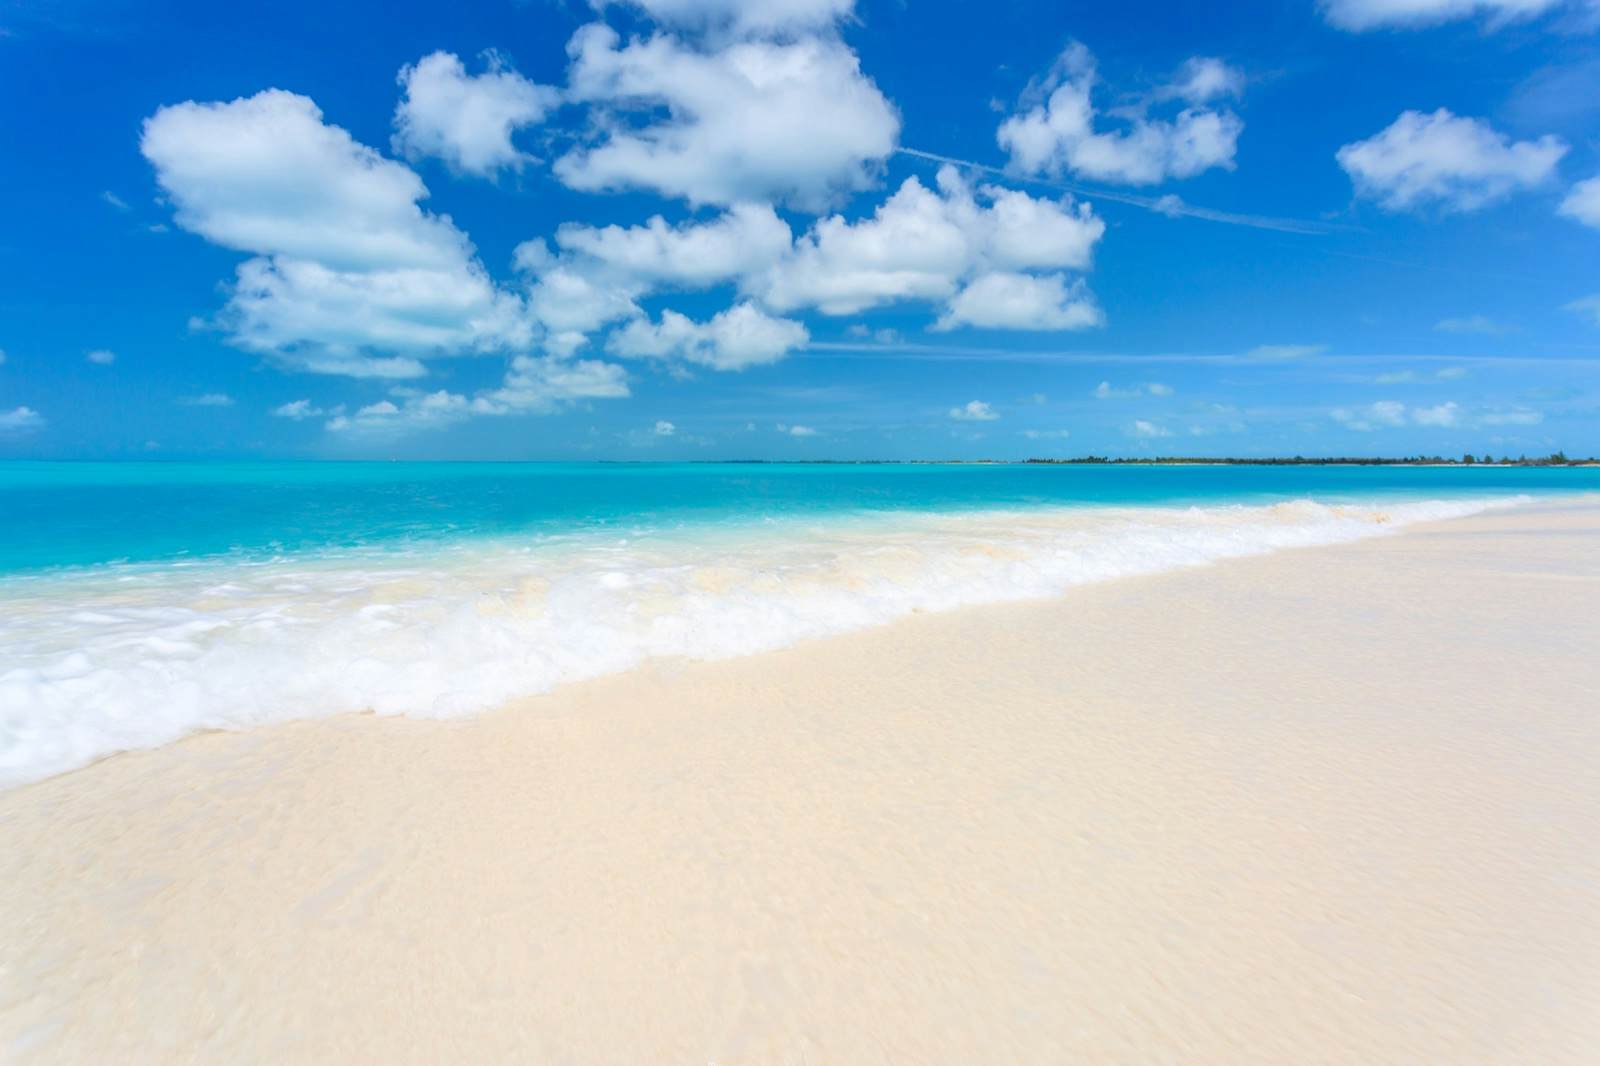 Kết quả hình ảnh cho Playa Paraiso, Cuba: 